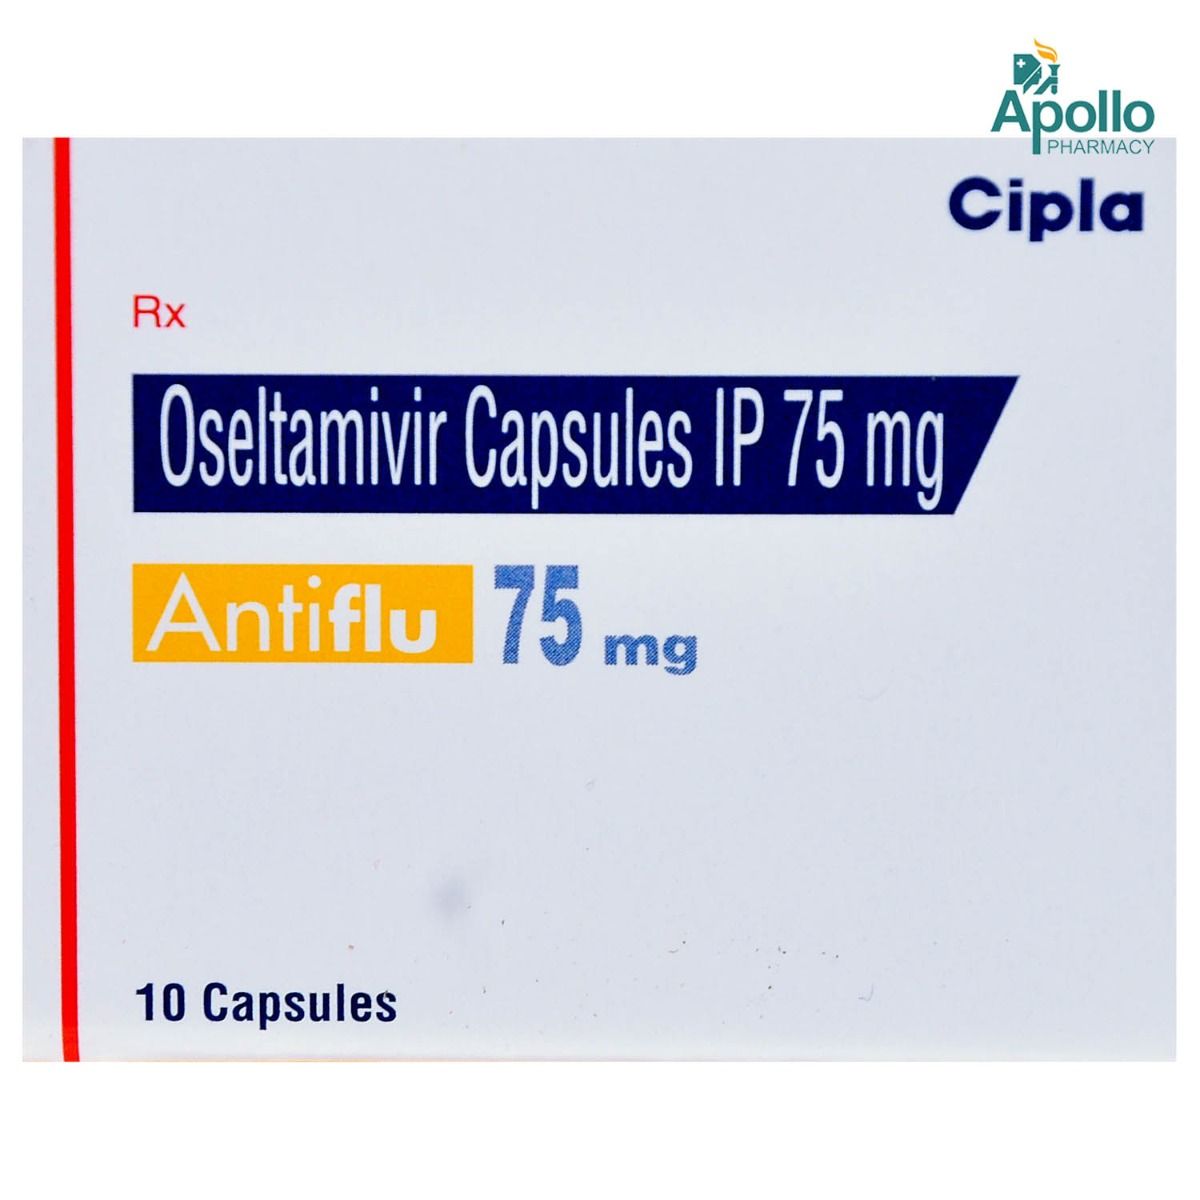 Buy Antiflu 75 mg Capsule 10's Online